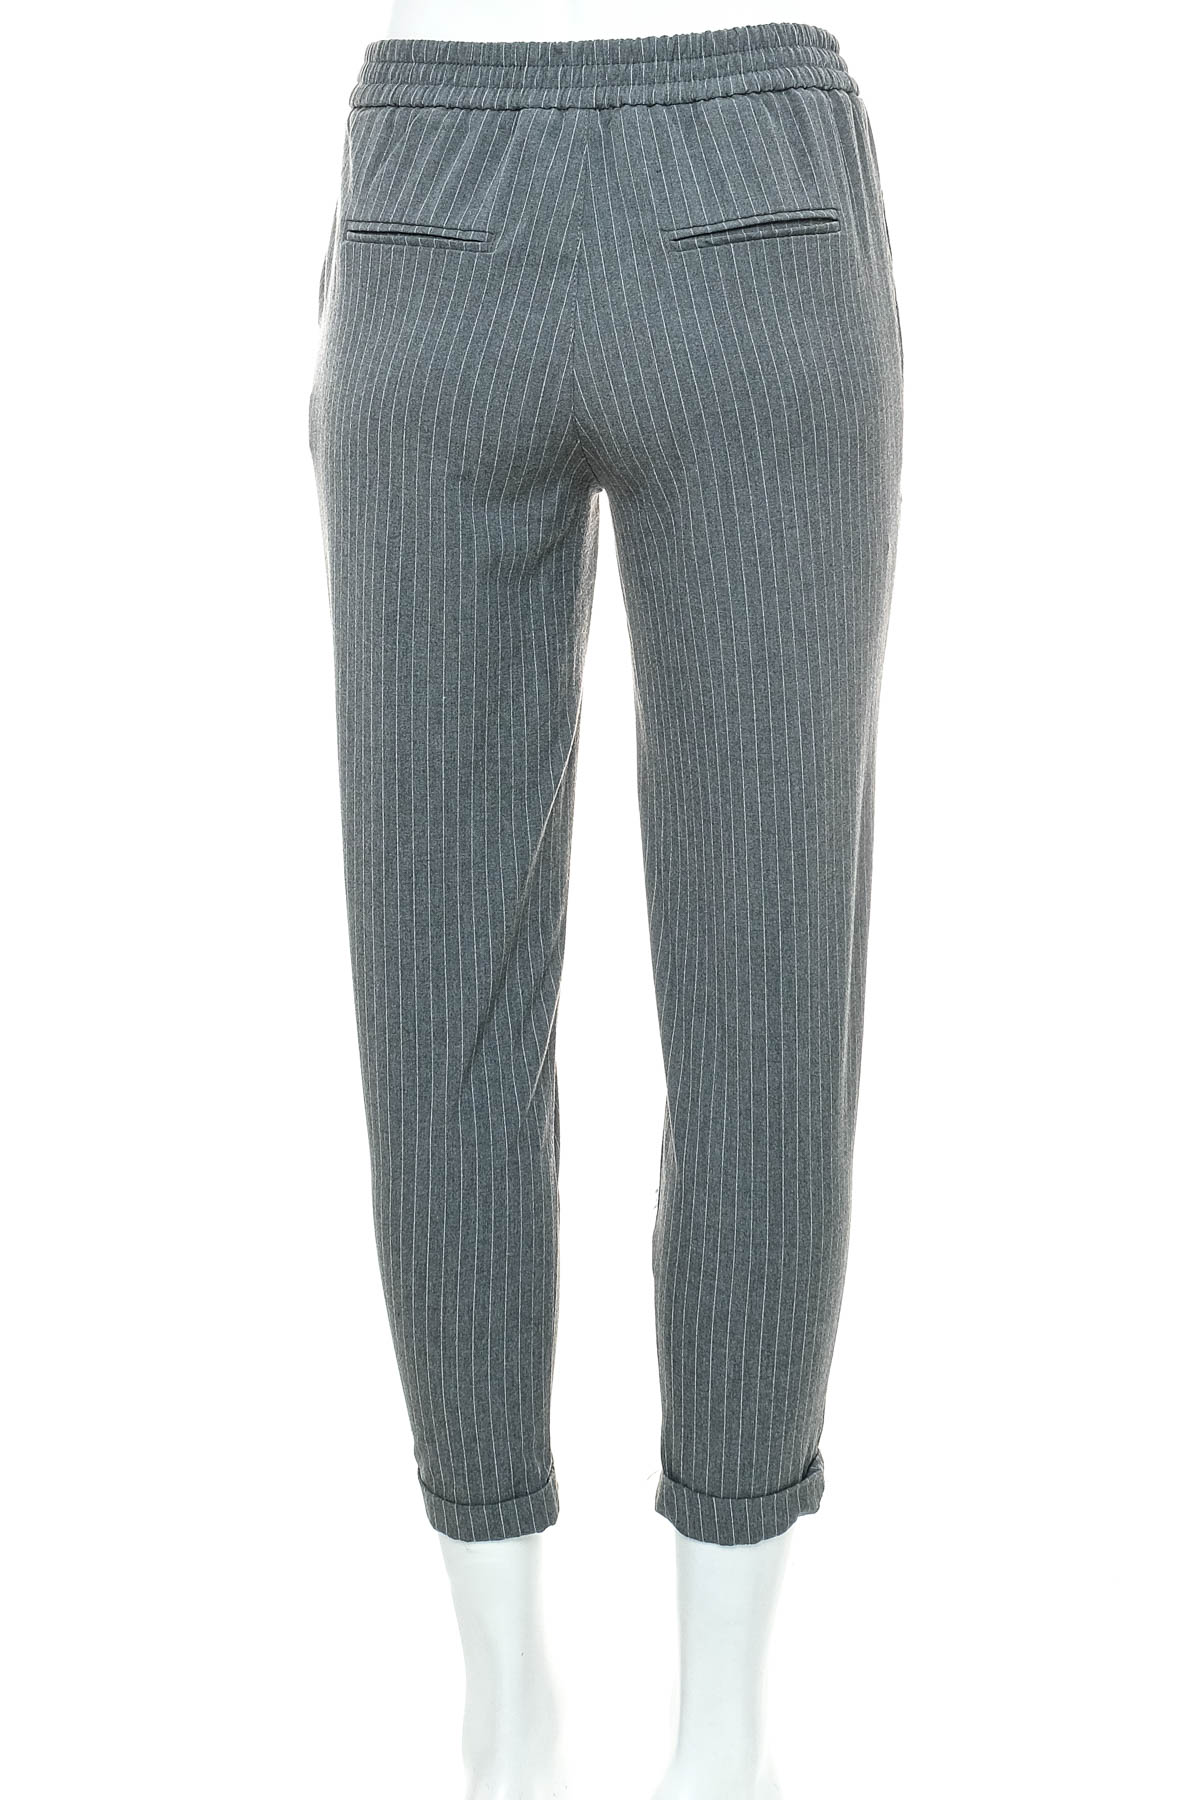 Women's trousers - Pull & Bear - 1